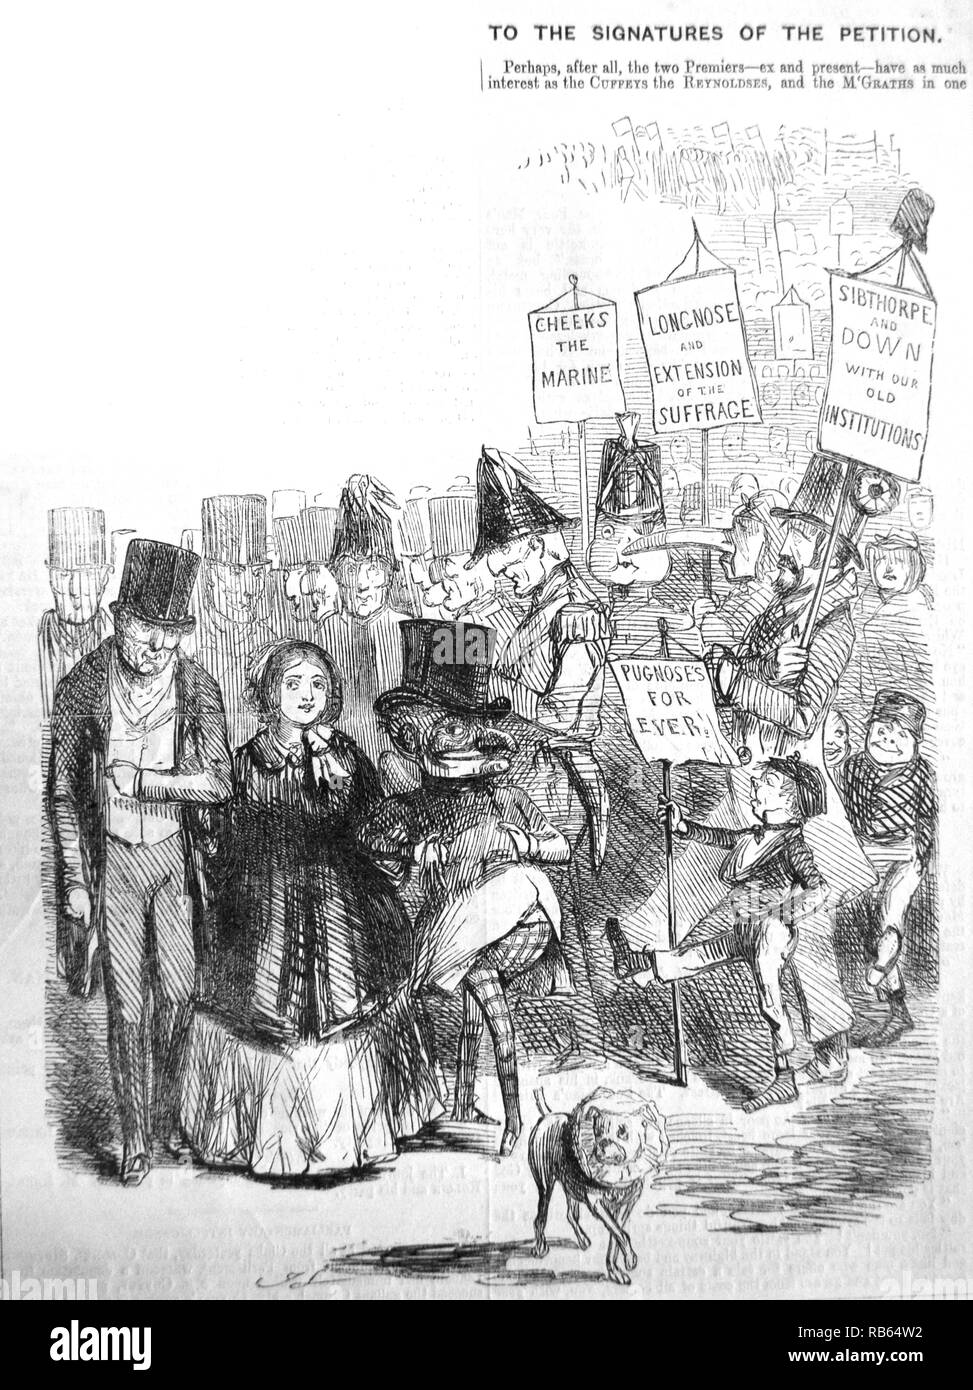 Le chartisme : comment la procession chartiste, de leur apparence, avec M. Punch, la reine Victoria et le duc de Wellington, suivie par d'autres éminentes citzens. John Leech Cartoon dans ''punch'', Londres, 1848. Banque D'Images